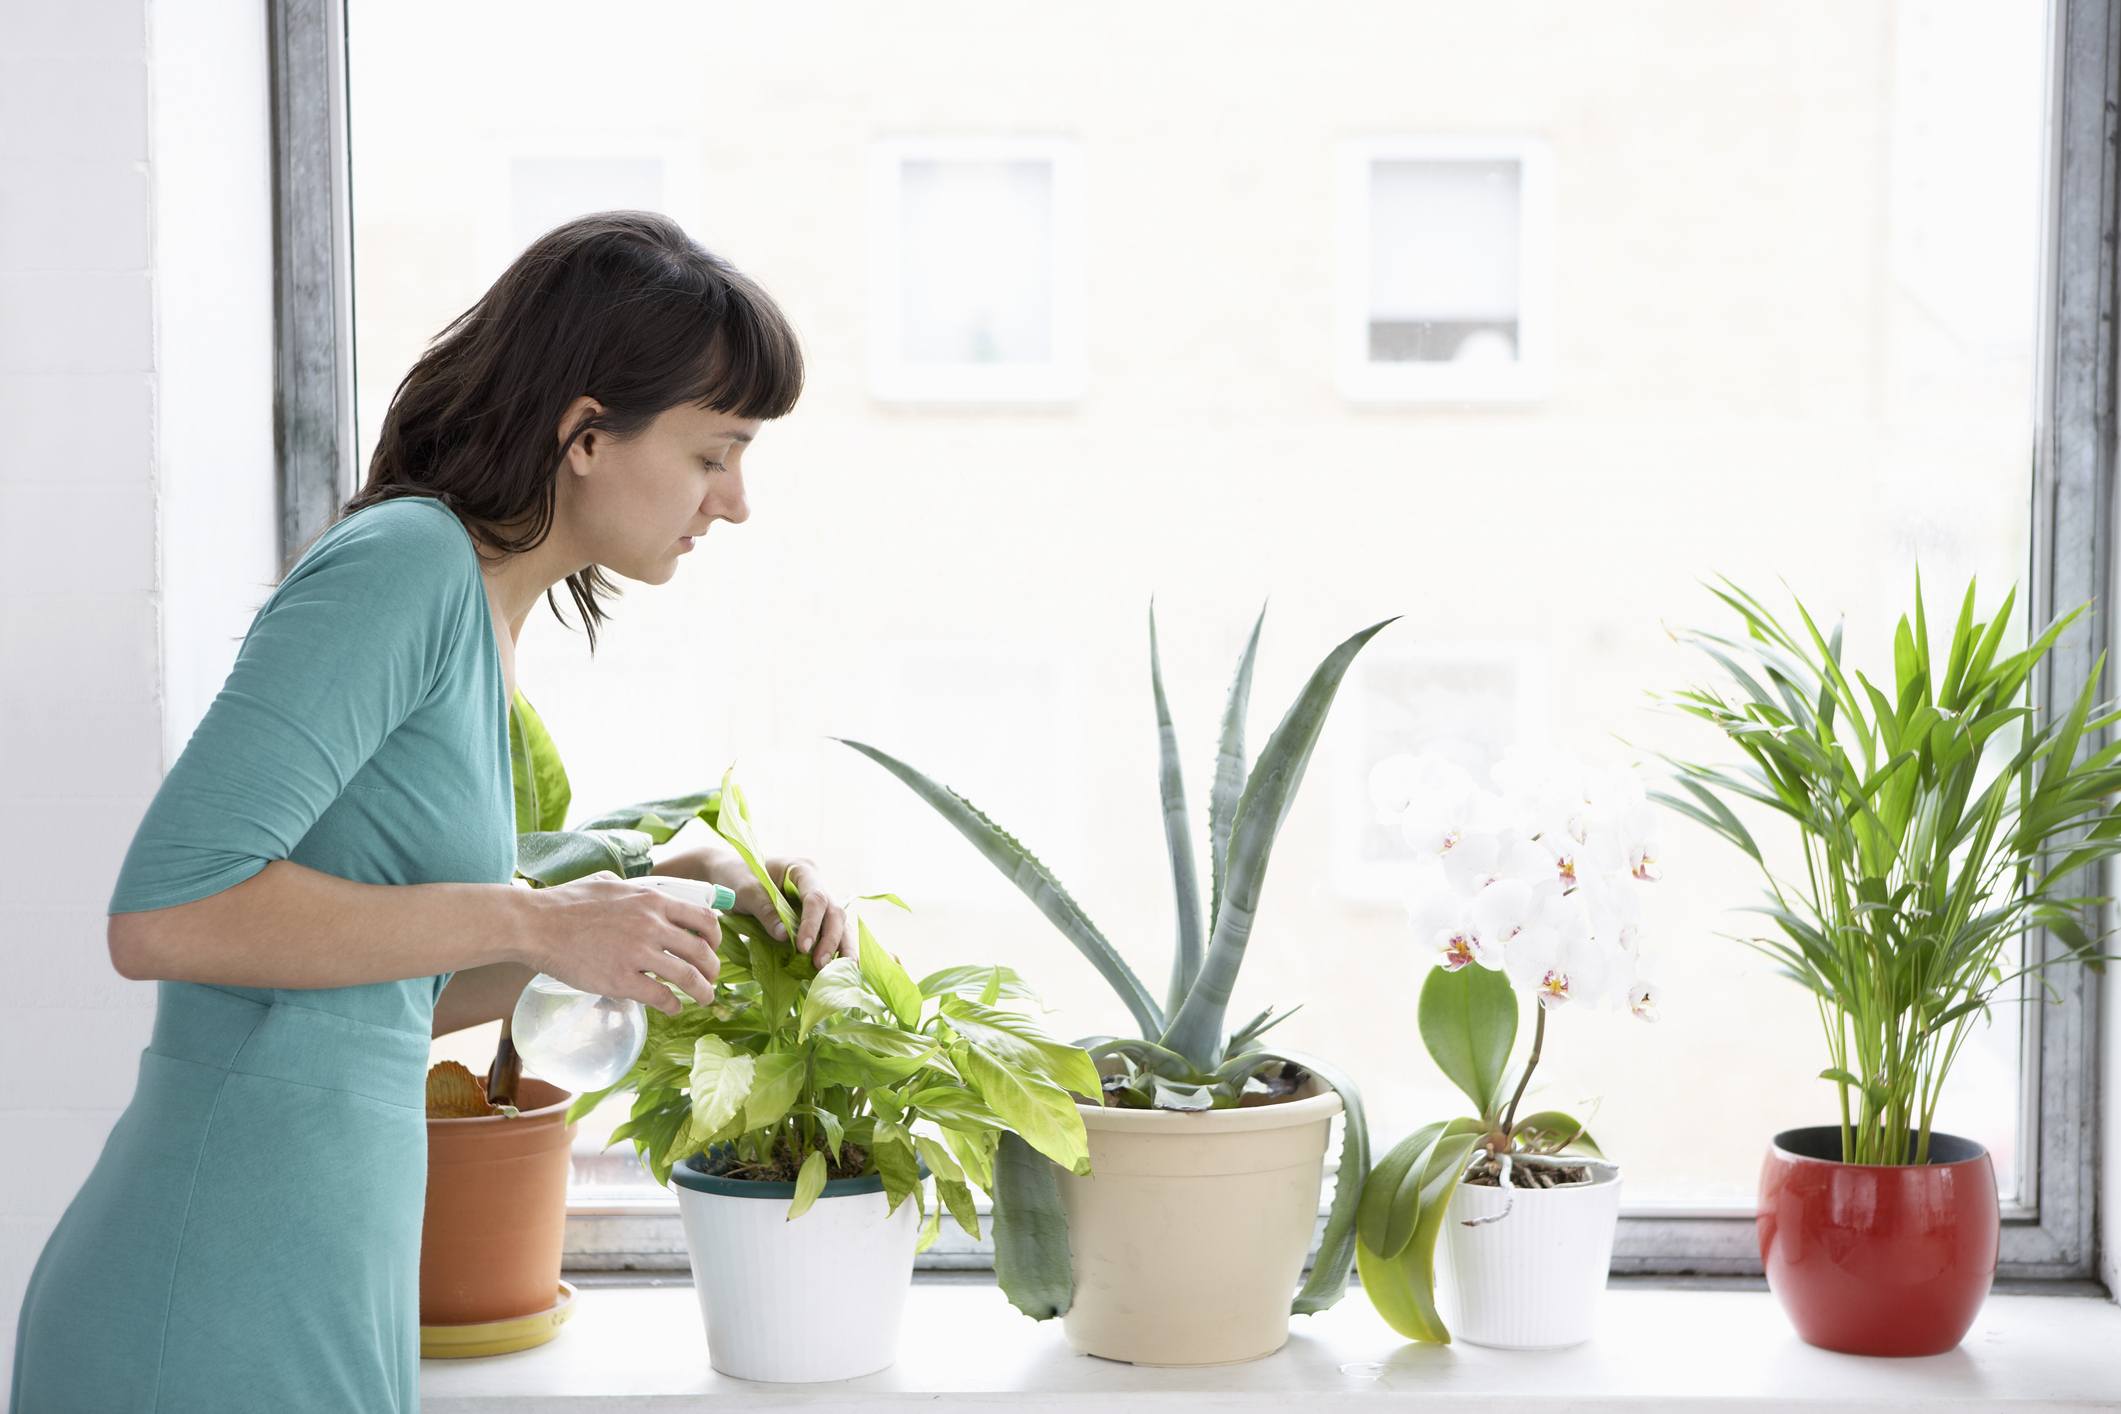 Woman Sprays Plants In Flowerpots